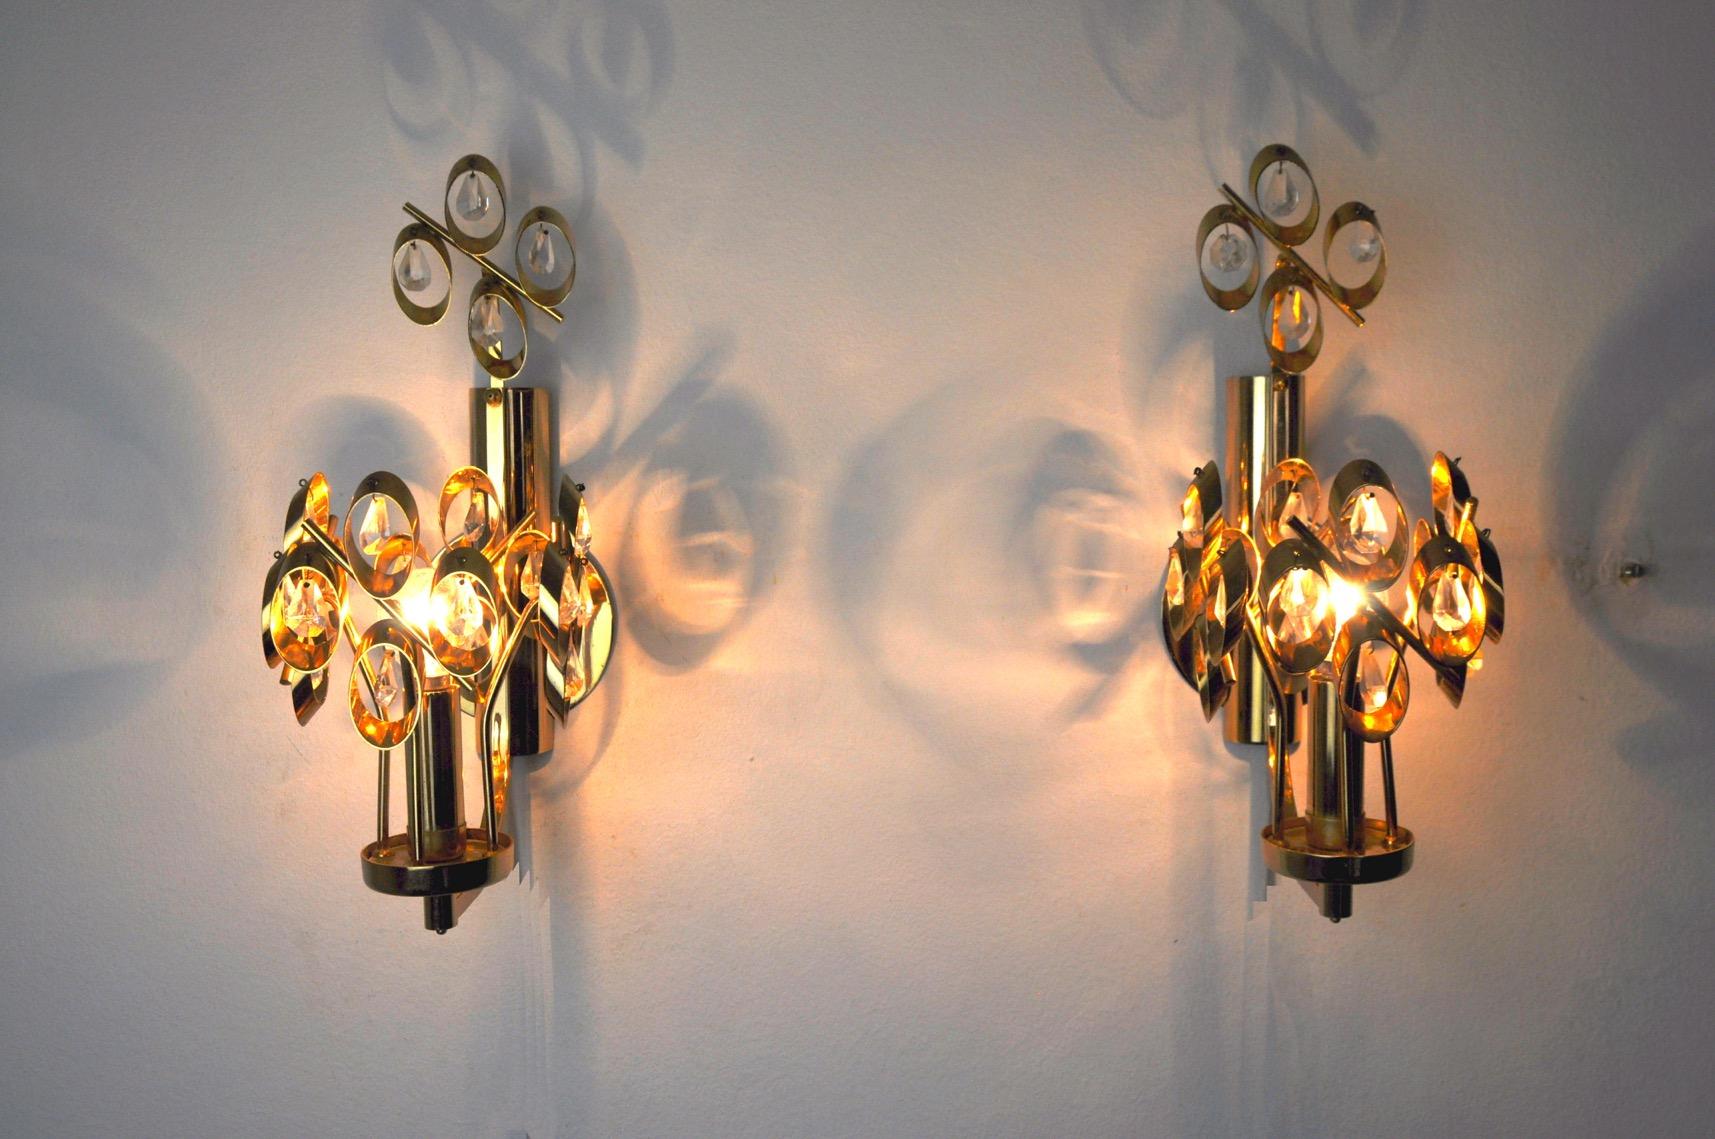 Seltenes Paar Palwa Wandlampen, entworfen von Ernest Palm und hergestellt in den 60er Jahren in Barcelona. Messingstruktur aus geschliffenen Kristallen in gutem Erhaltungszustand. Ein seltenes Designobjekt, das Ihr Interieur wunderbar beleuchten